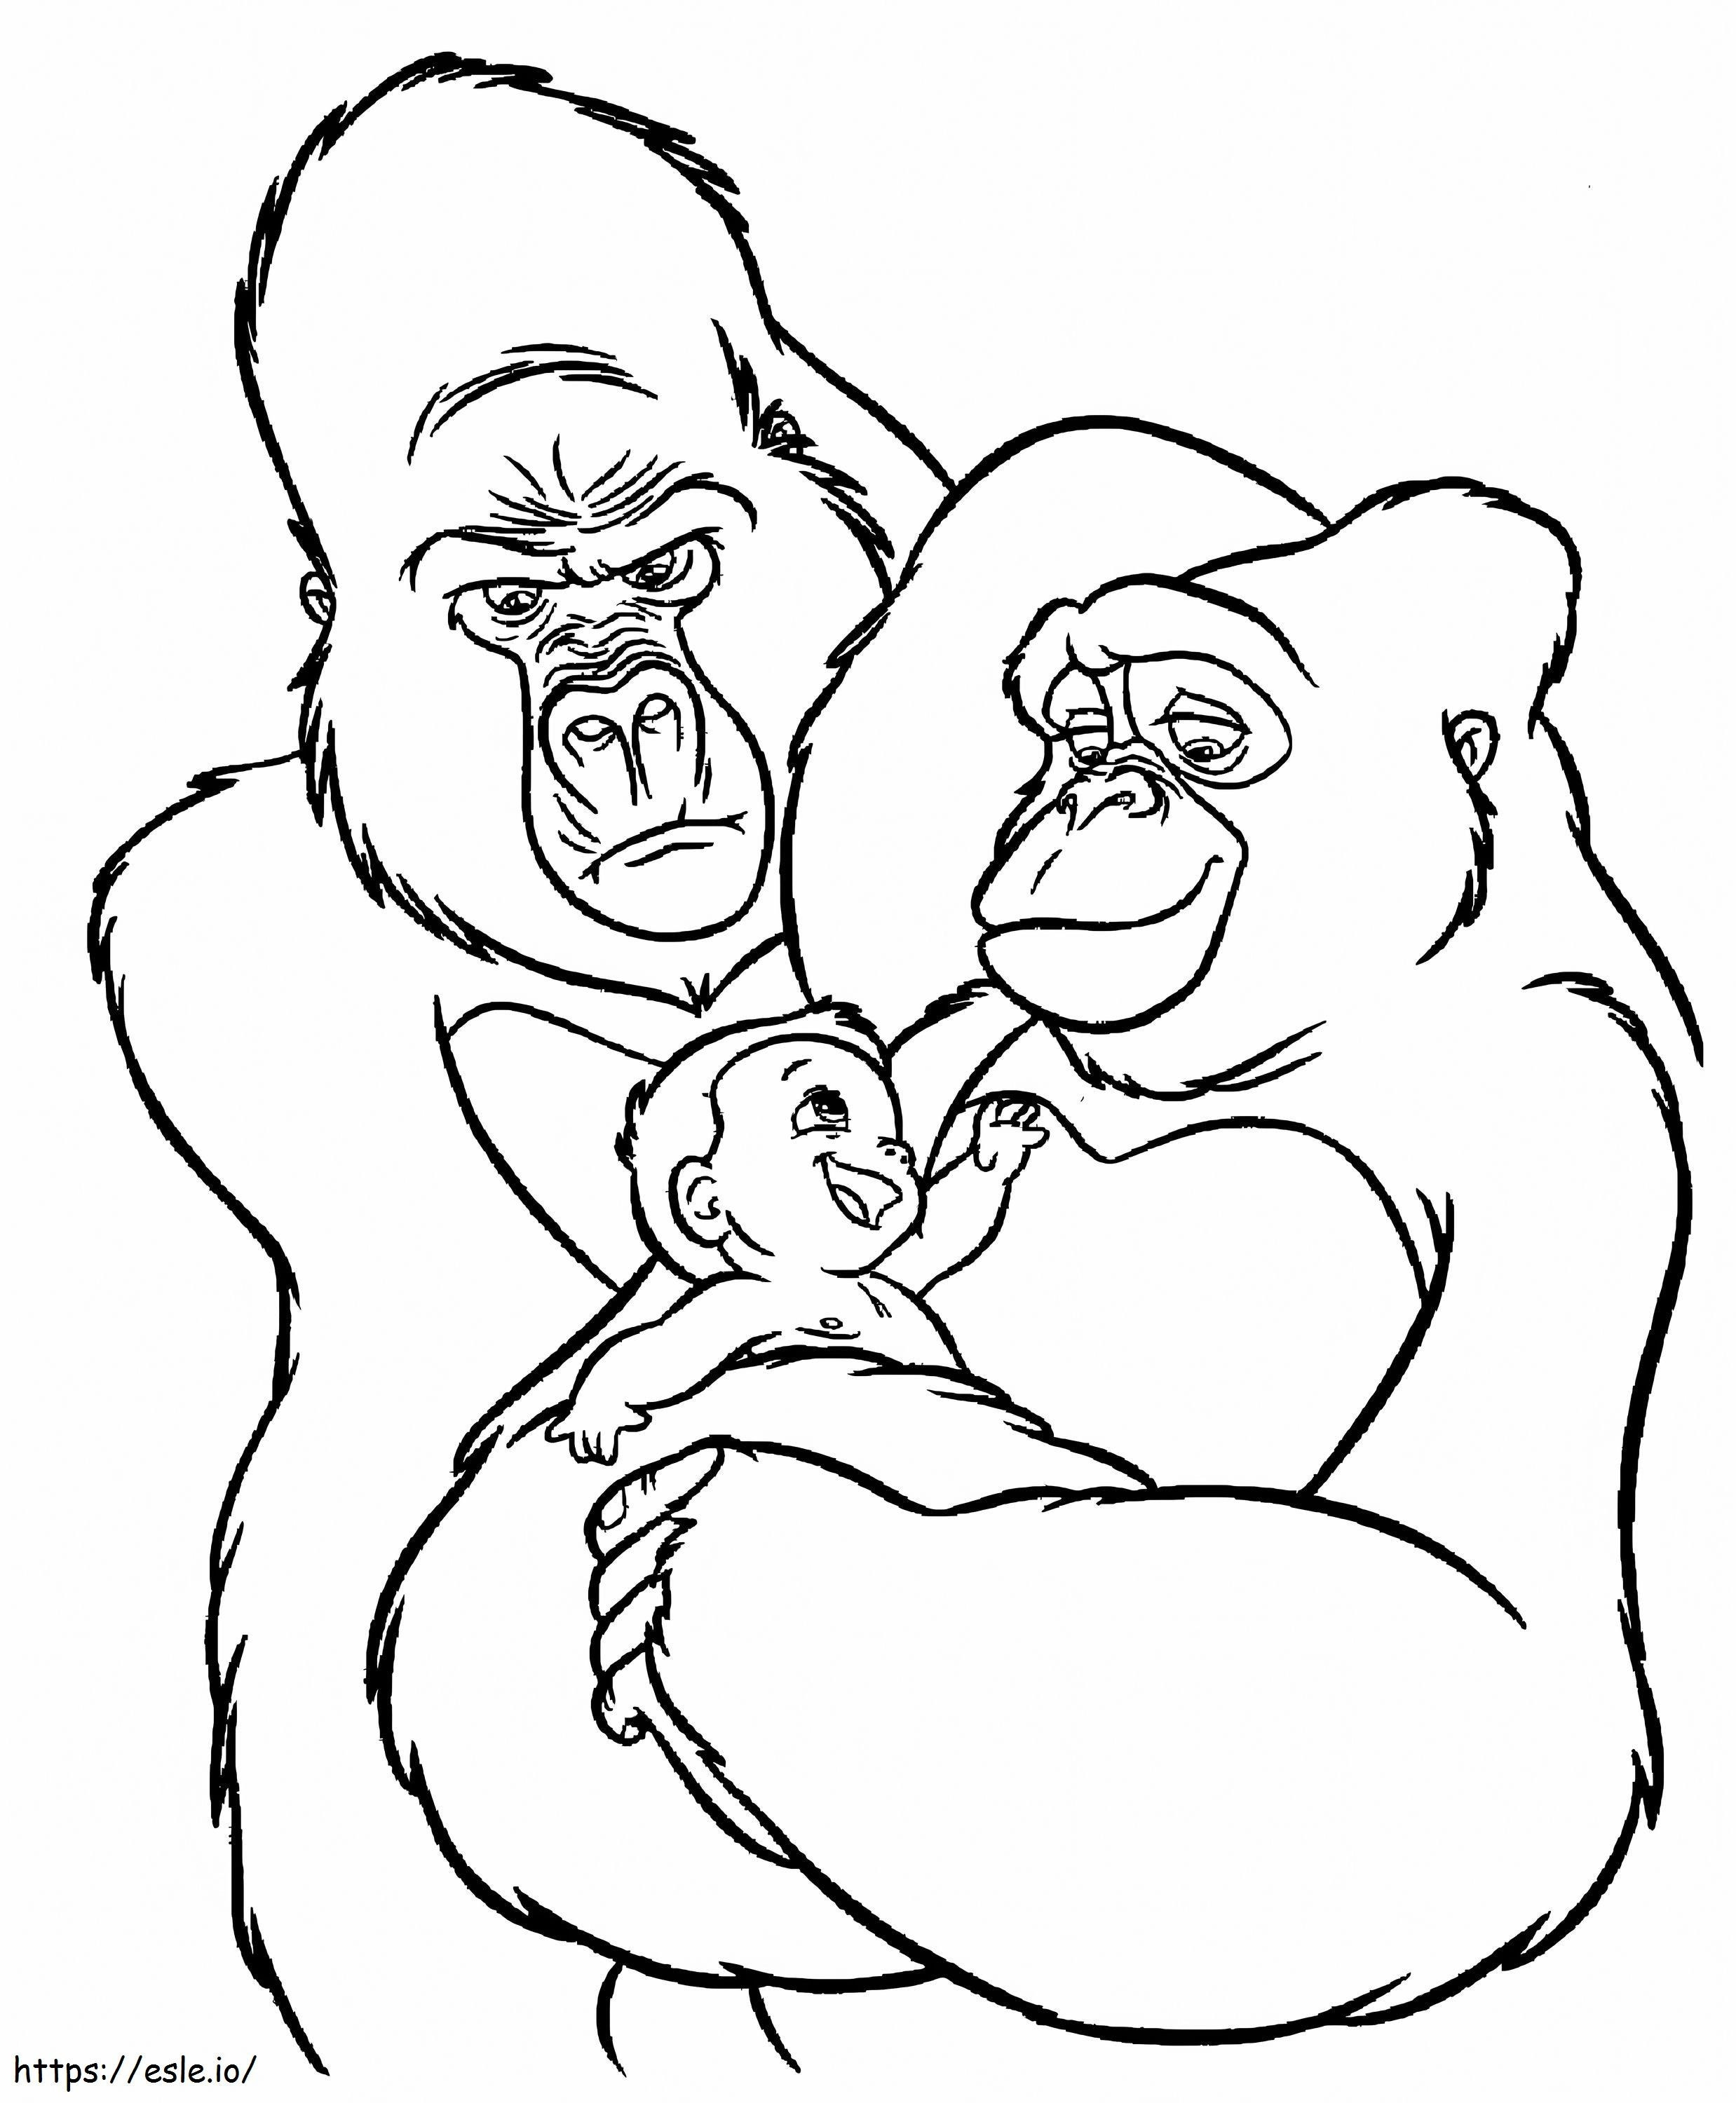 Doi King Kong cu copilul de colorat